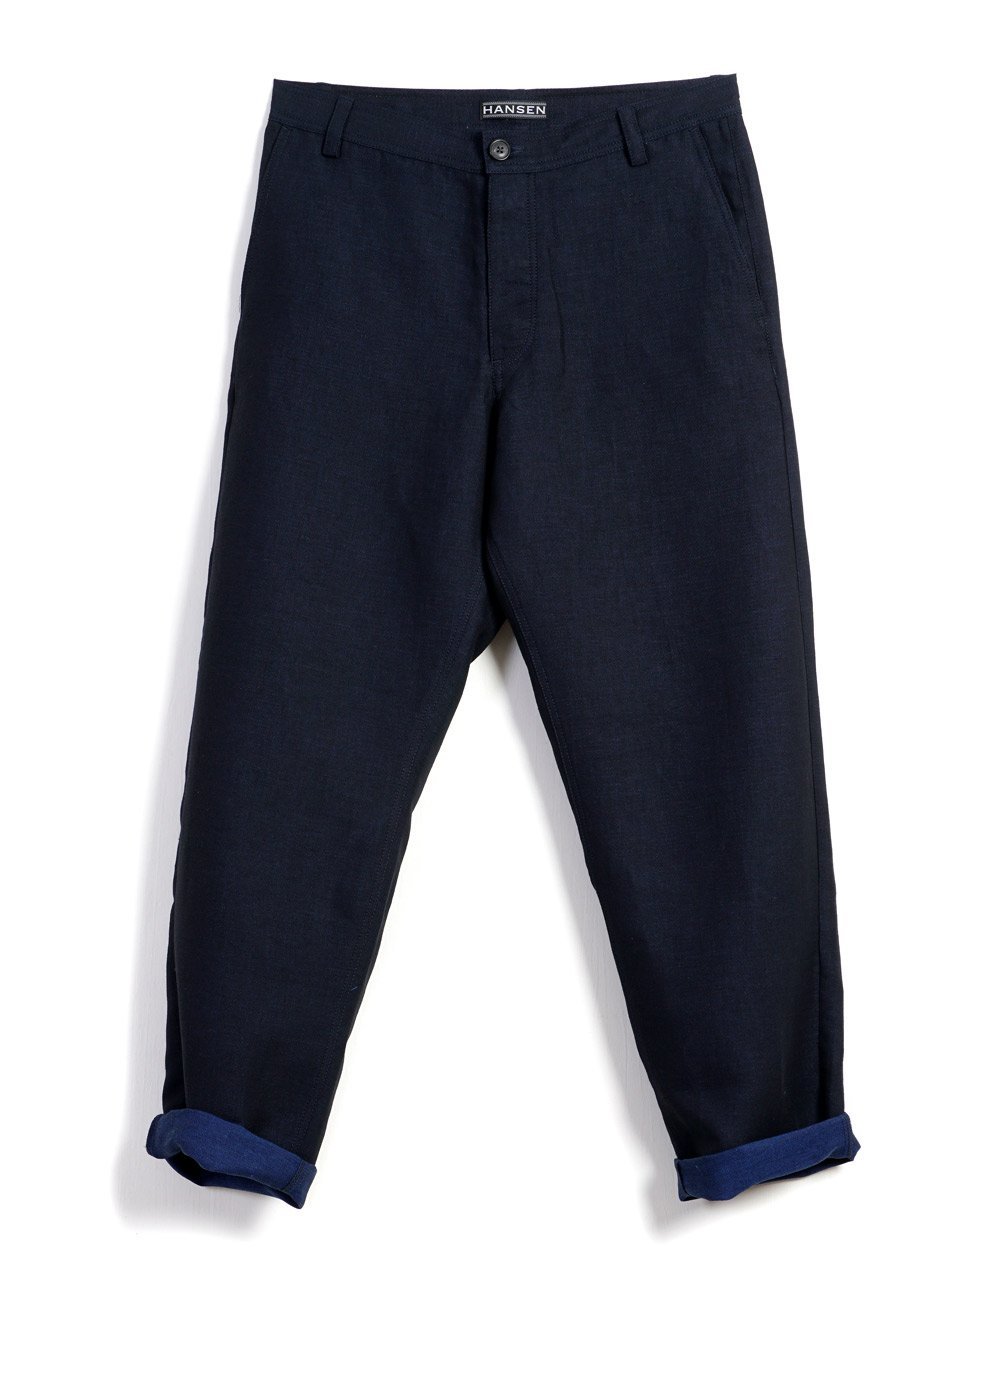 Hansen Garments KEN | Wide Cut Trousers | 3-Tone Blue